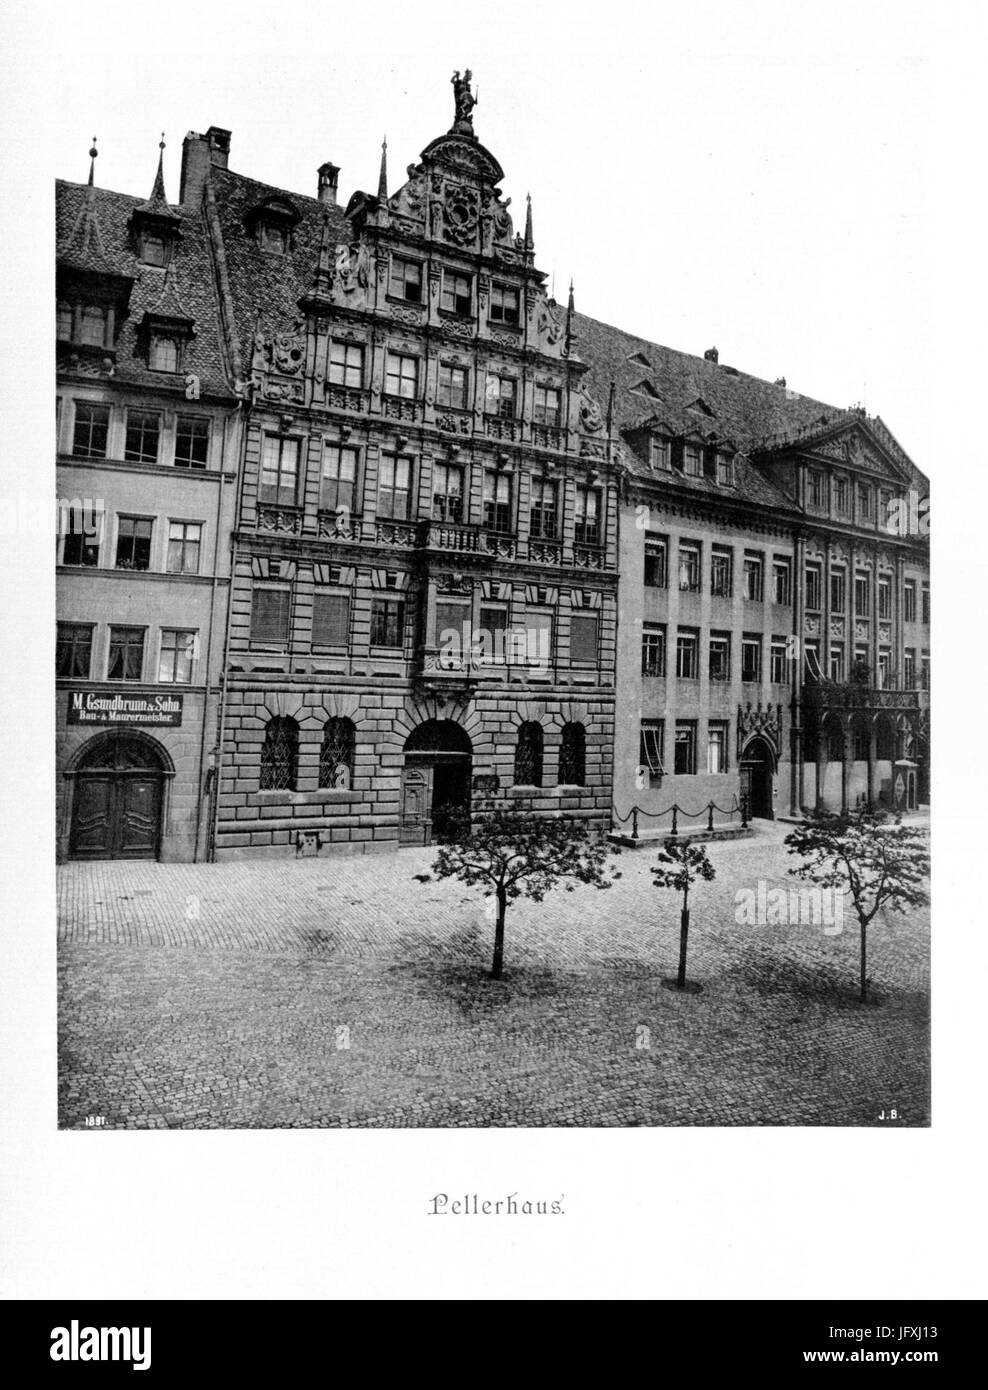 Die Baudenkmäler der Stadt Nürnberg 021 Pellerhaus Stock Photo